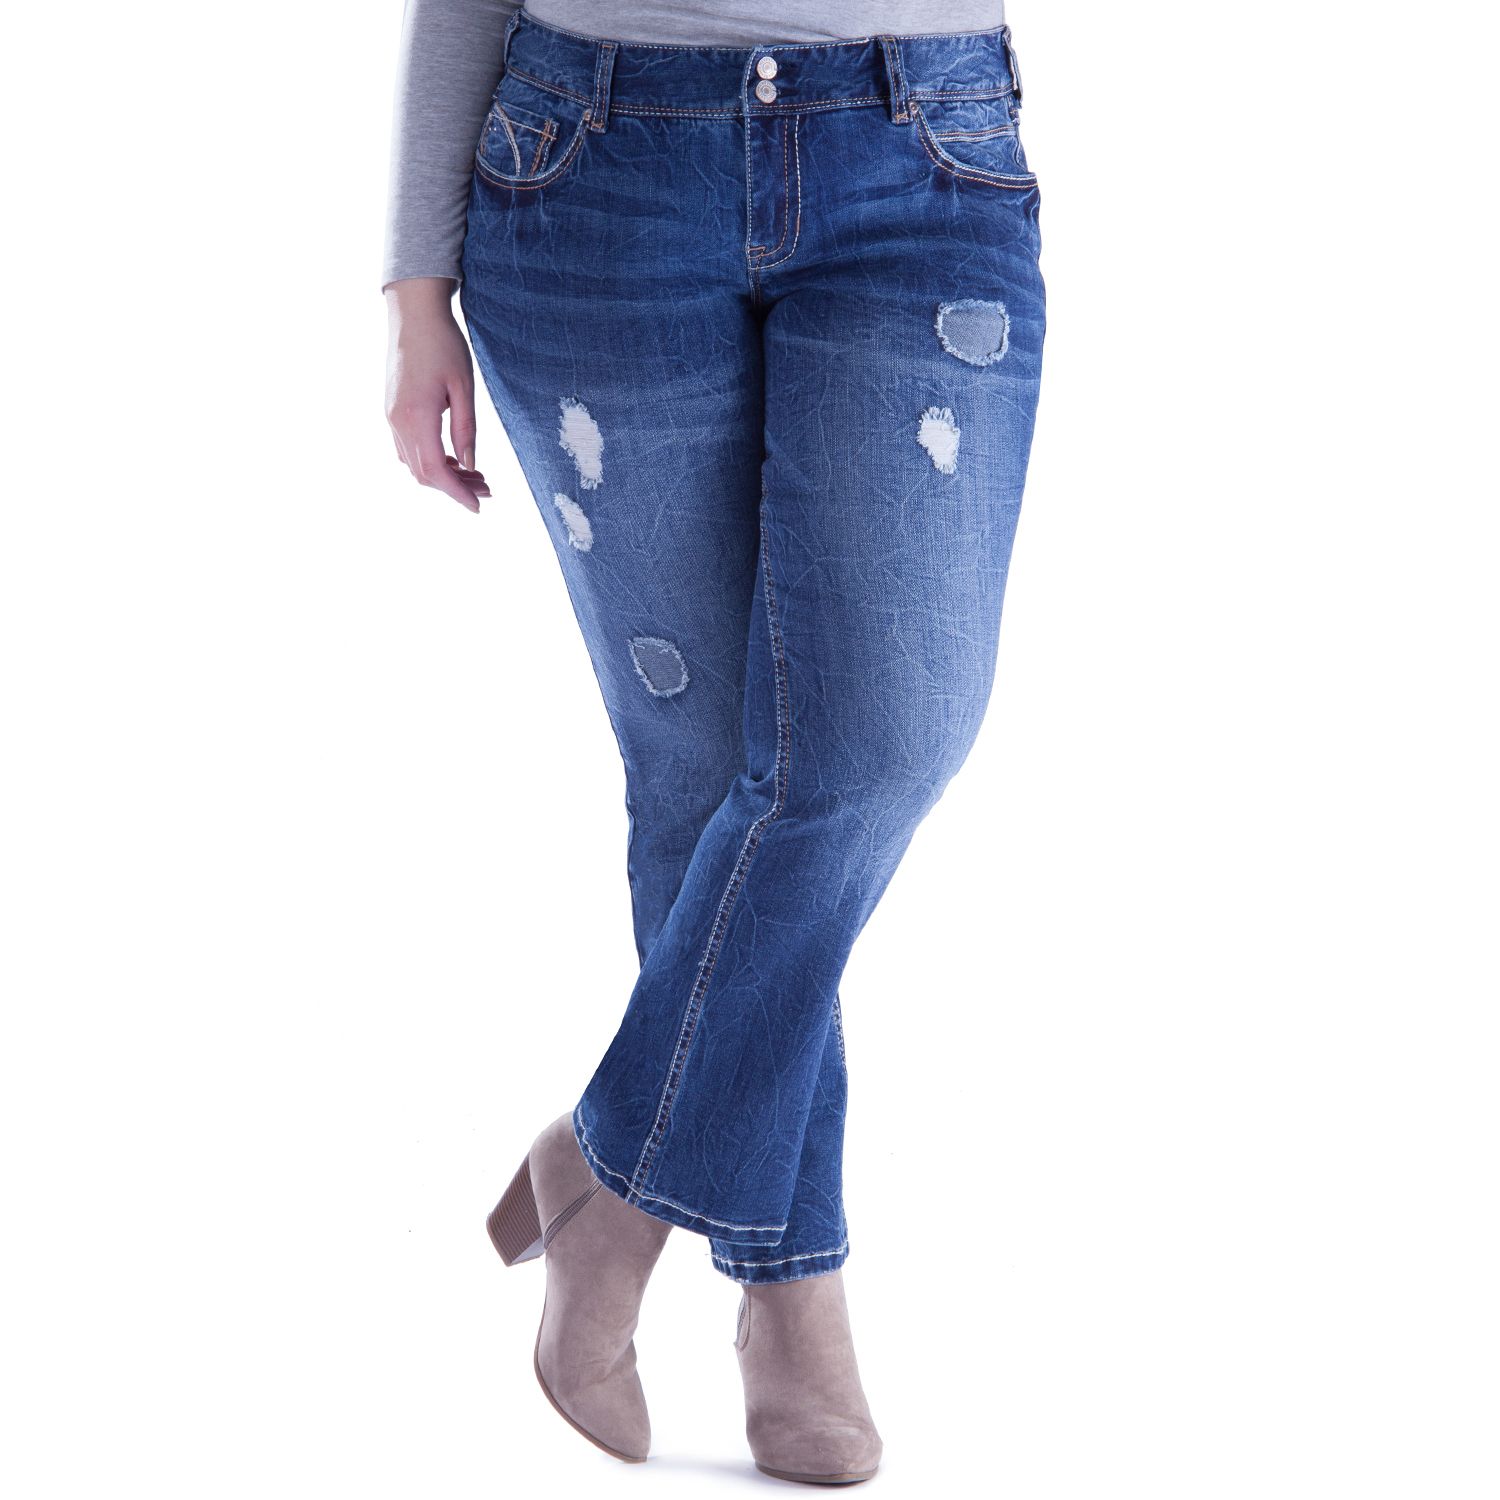 amethyst jeans plus size